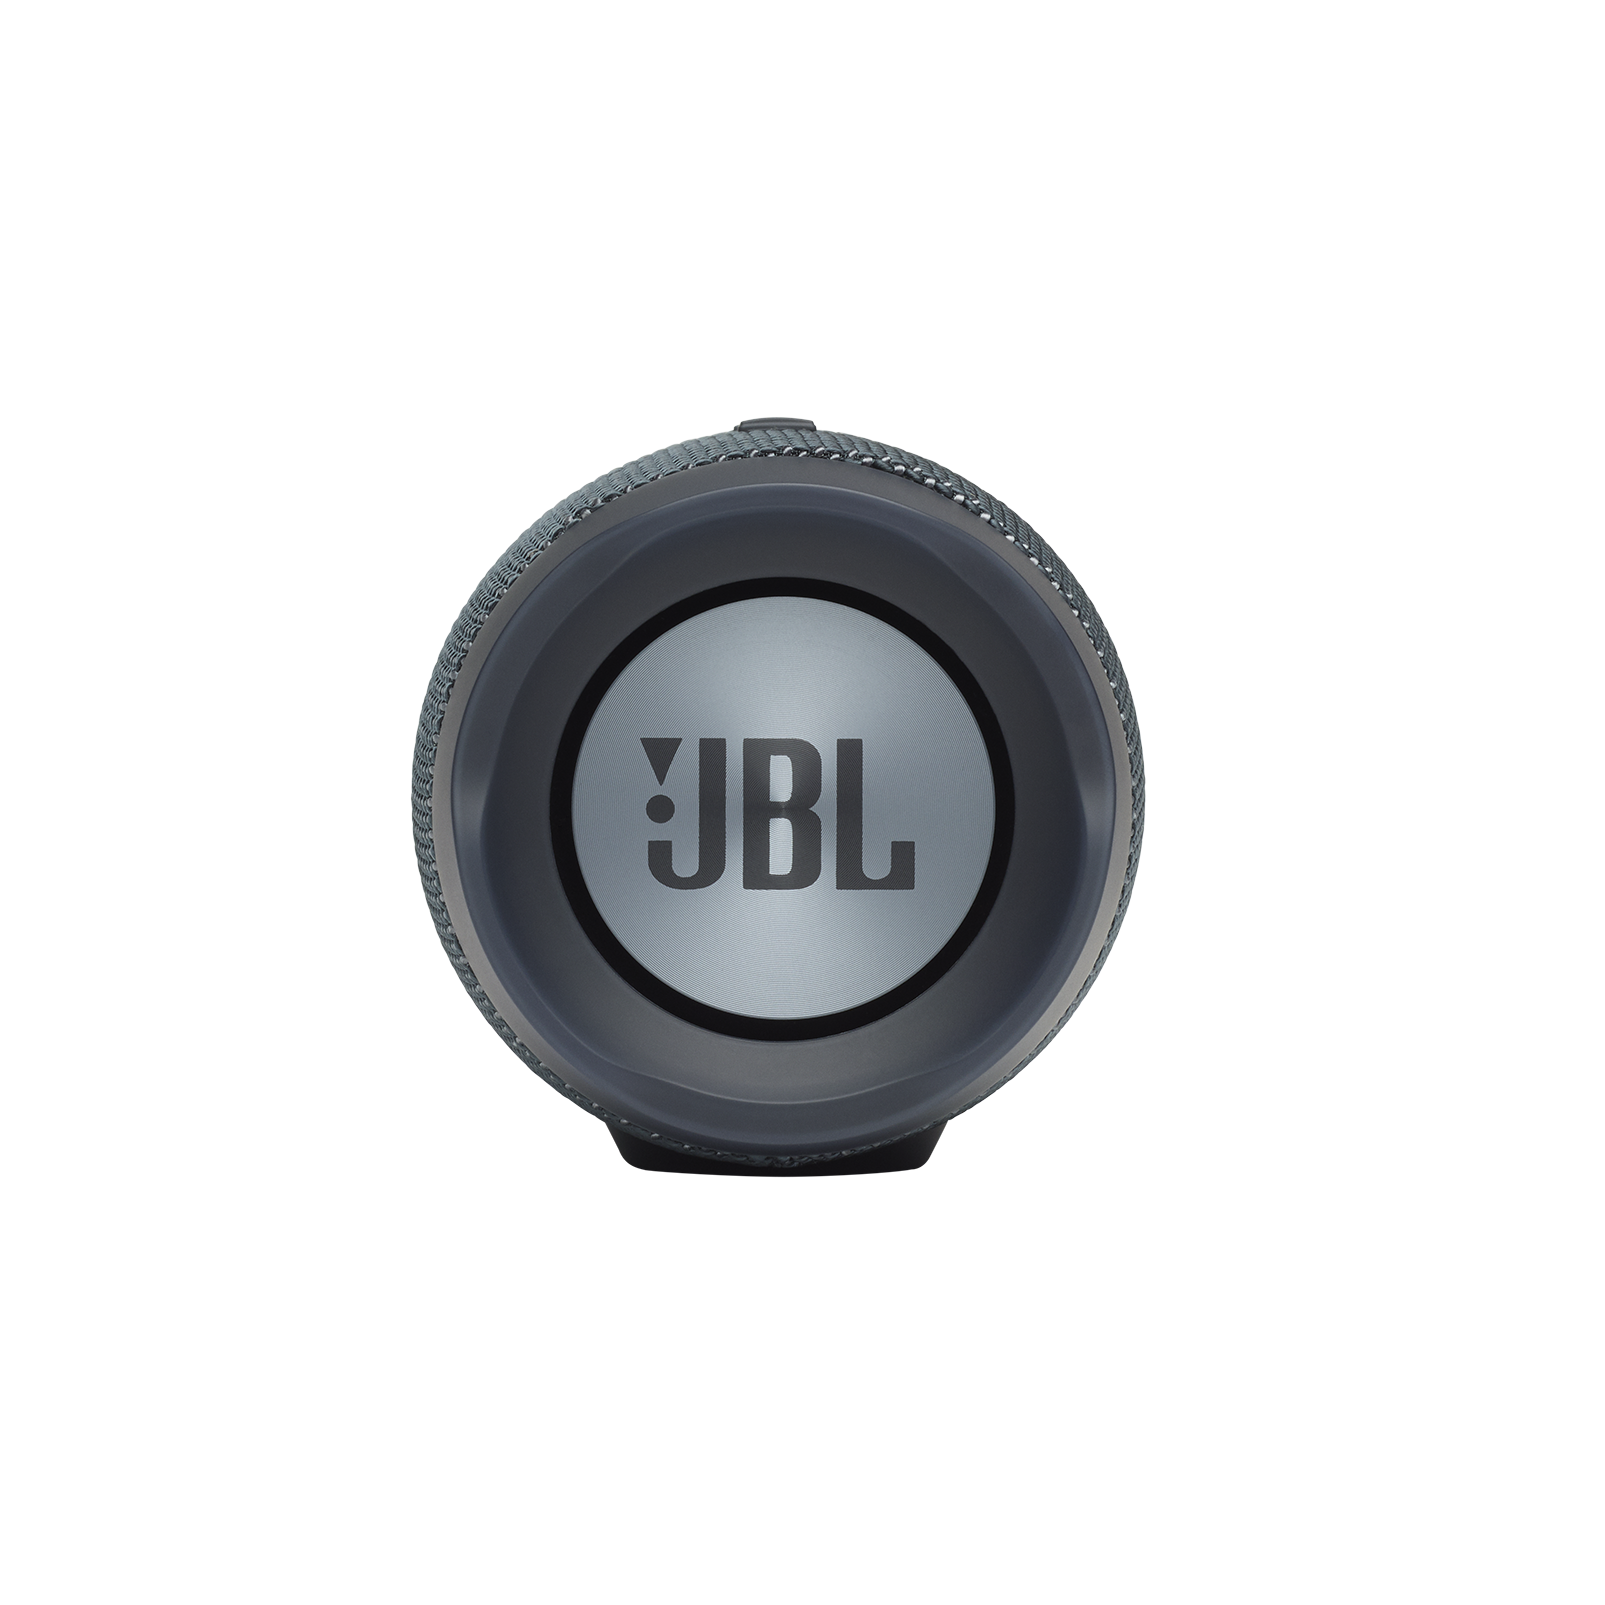 JBL Charge Essential - Gun Metal - Portable waterproof speaker - Left